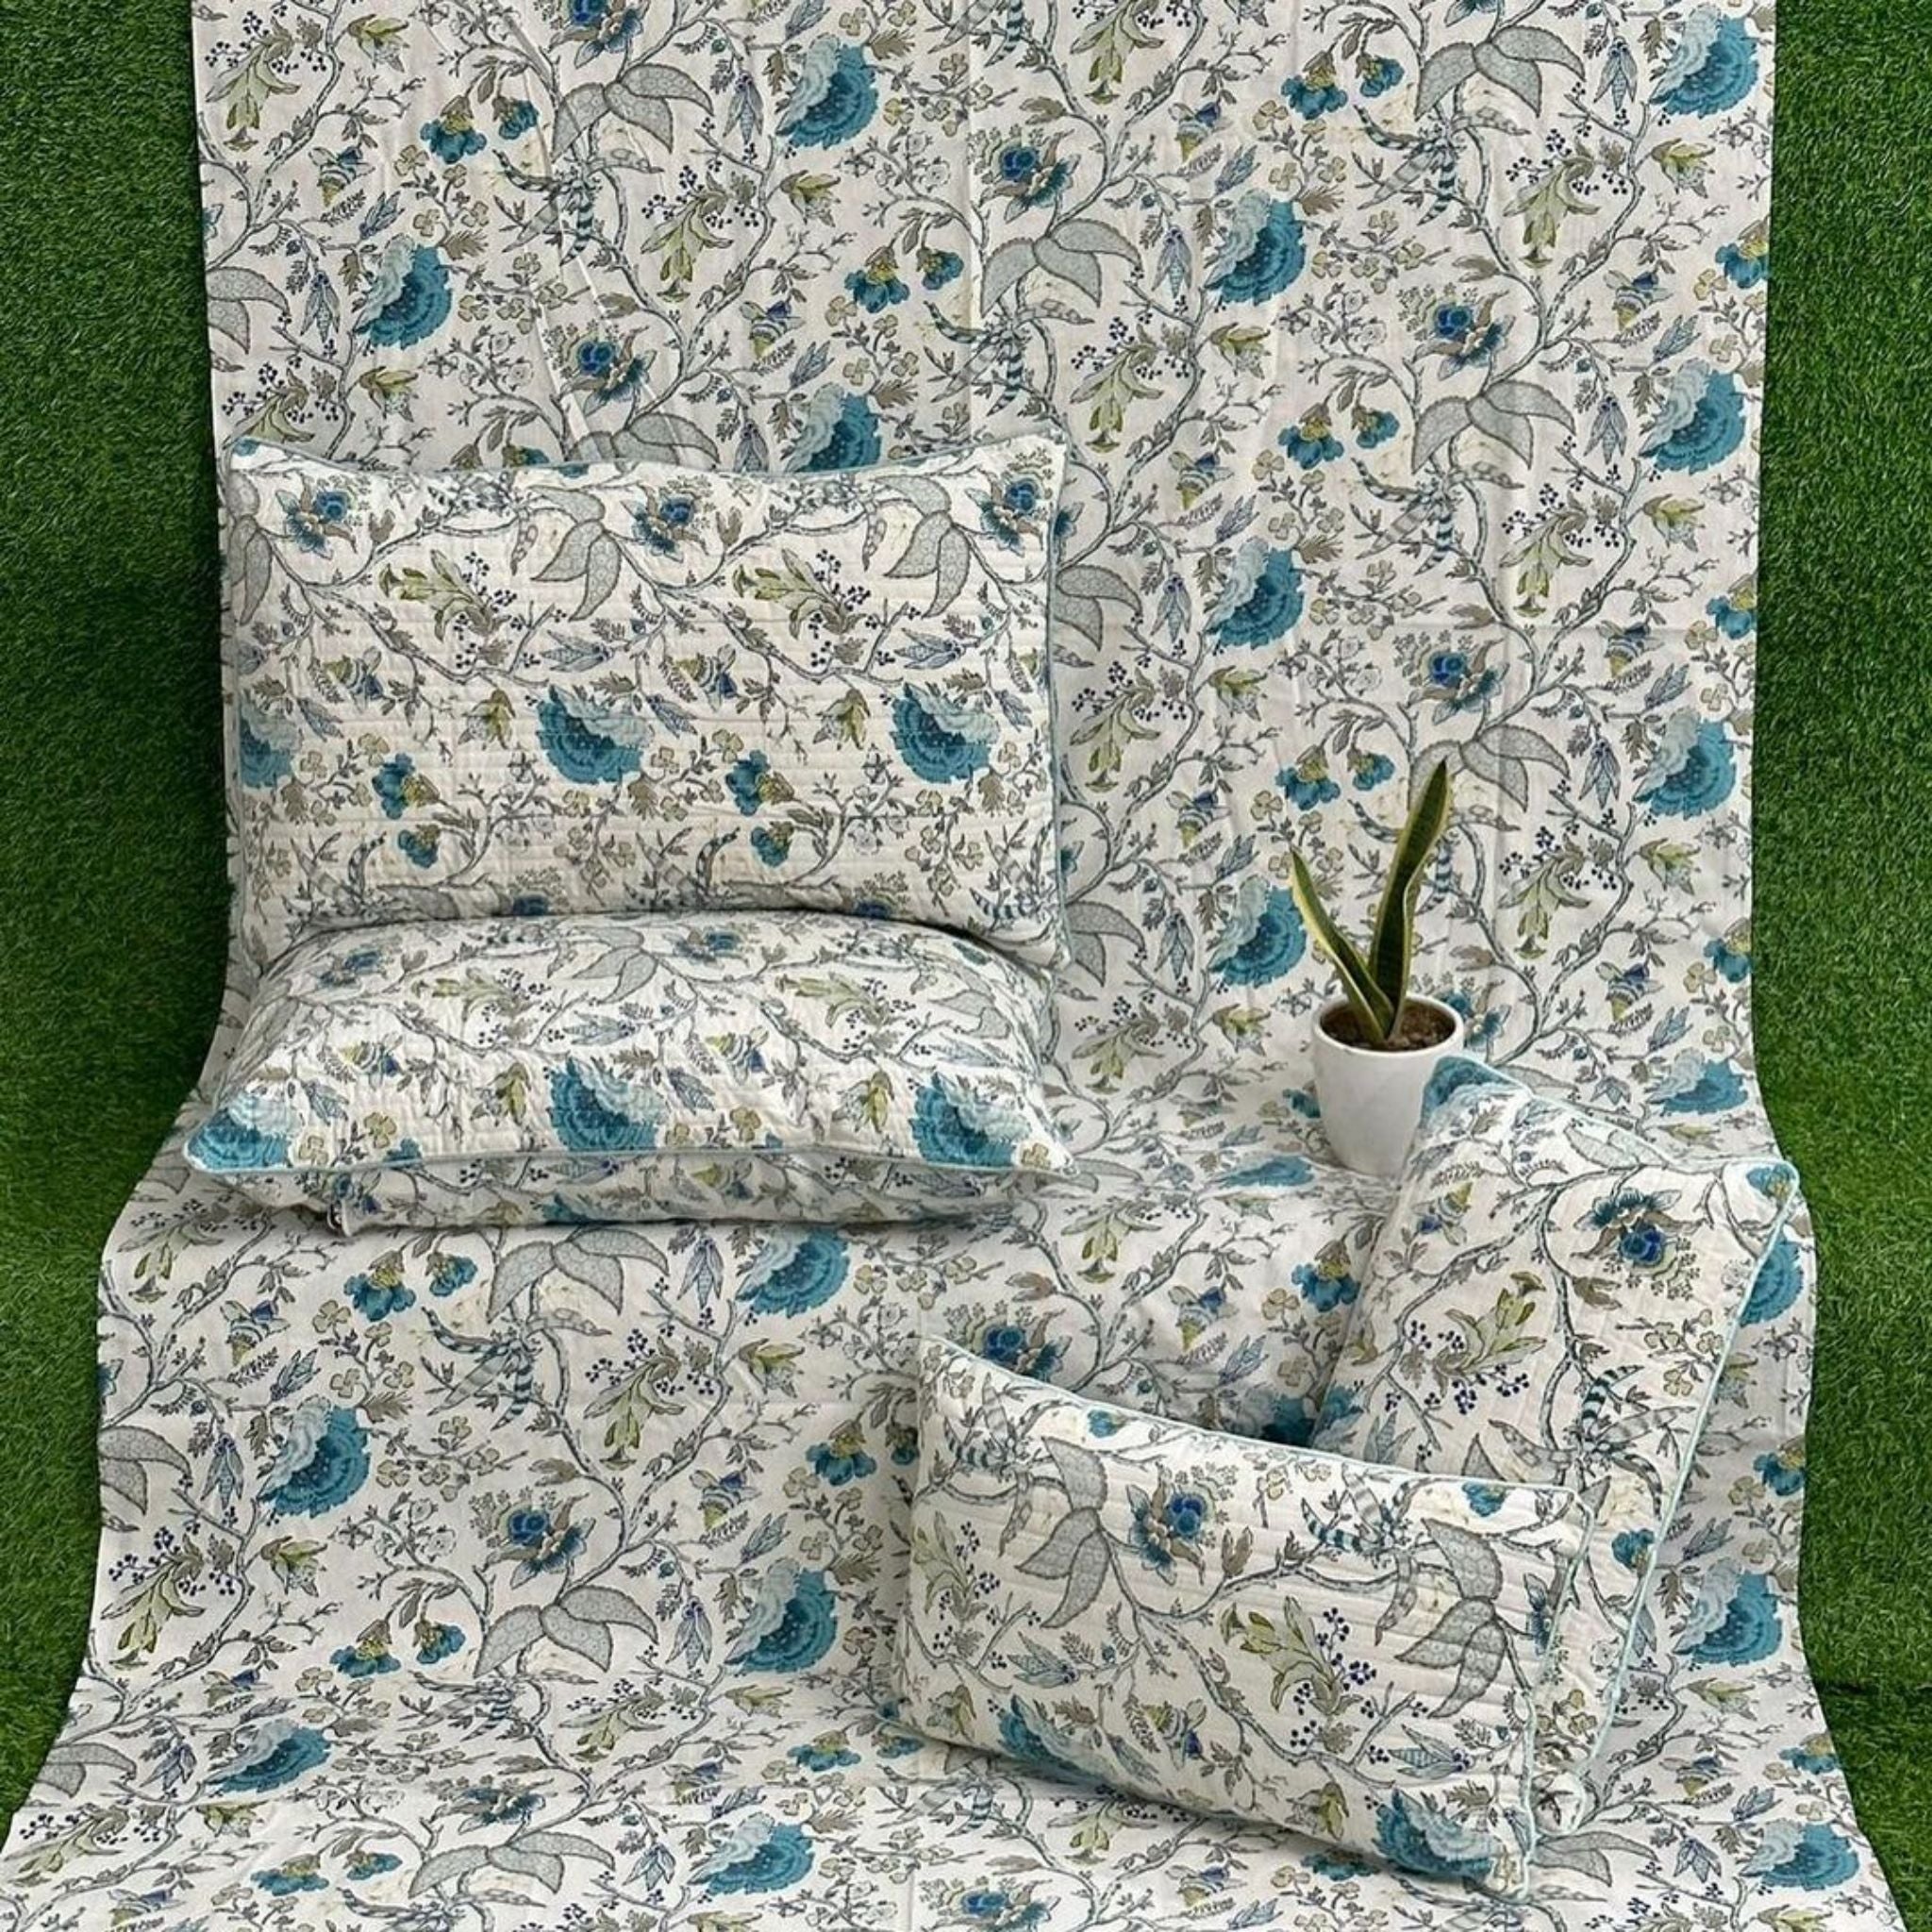 Anokhi 5pc Cotton Bedding Set